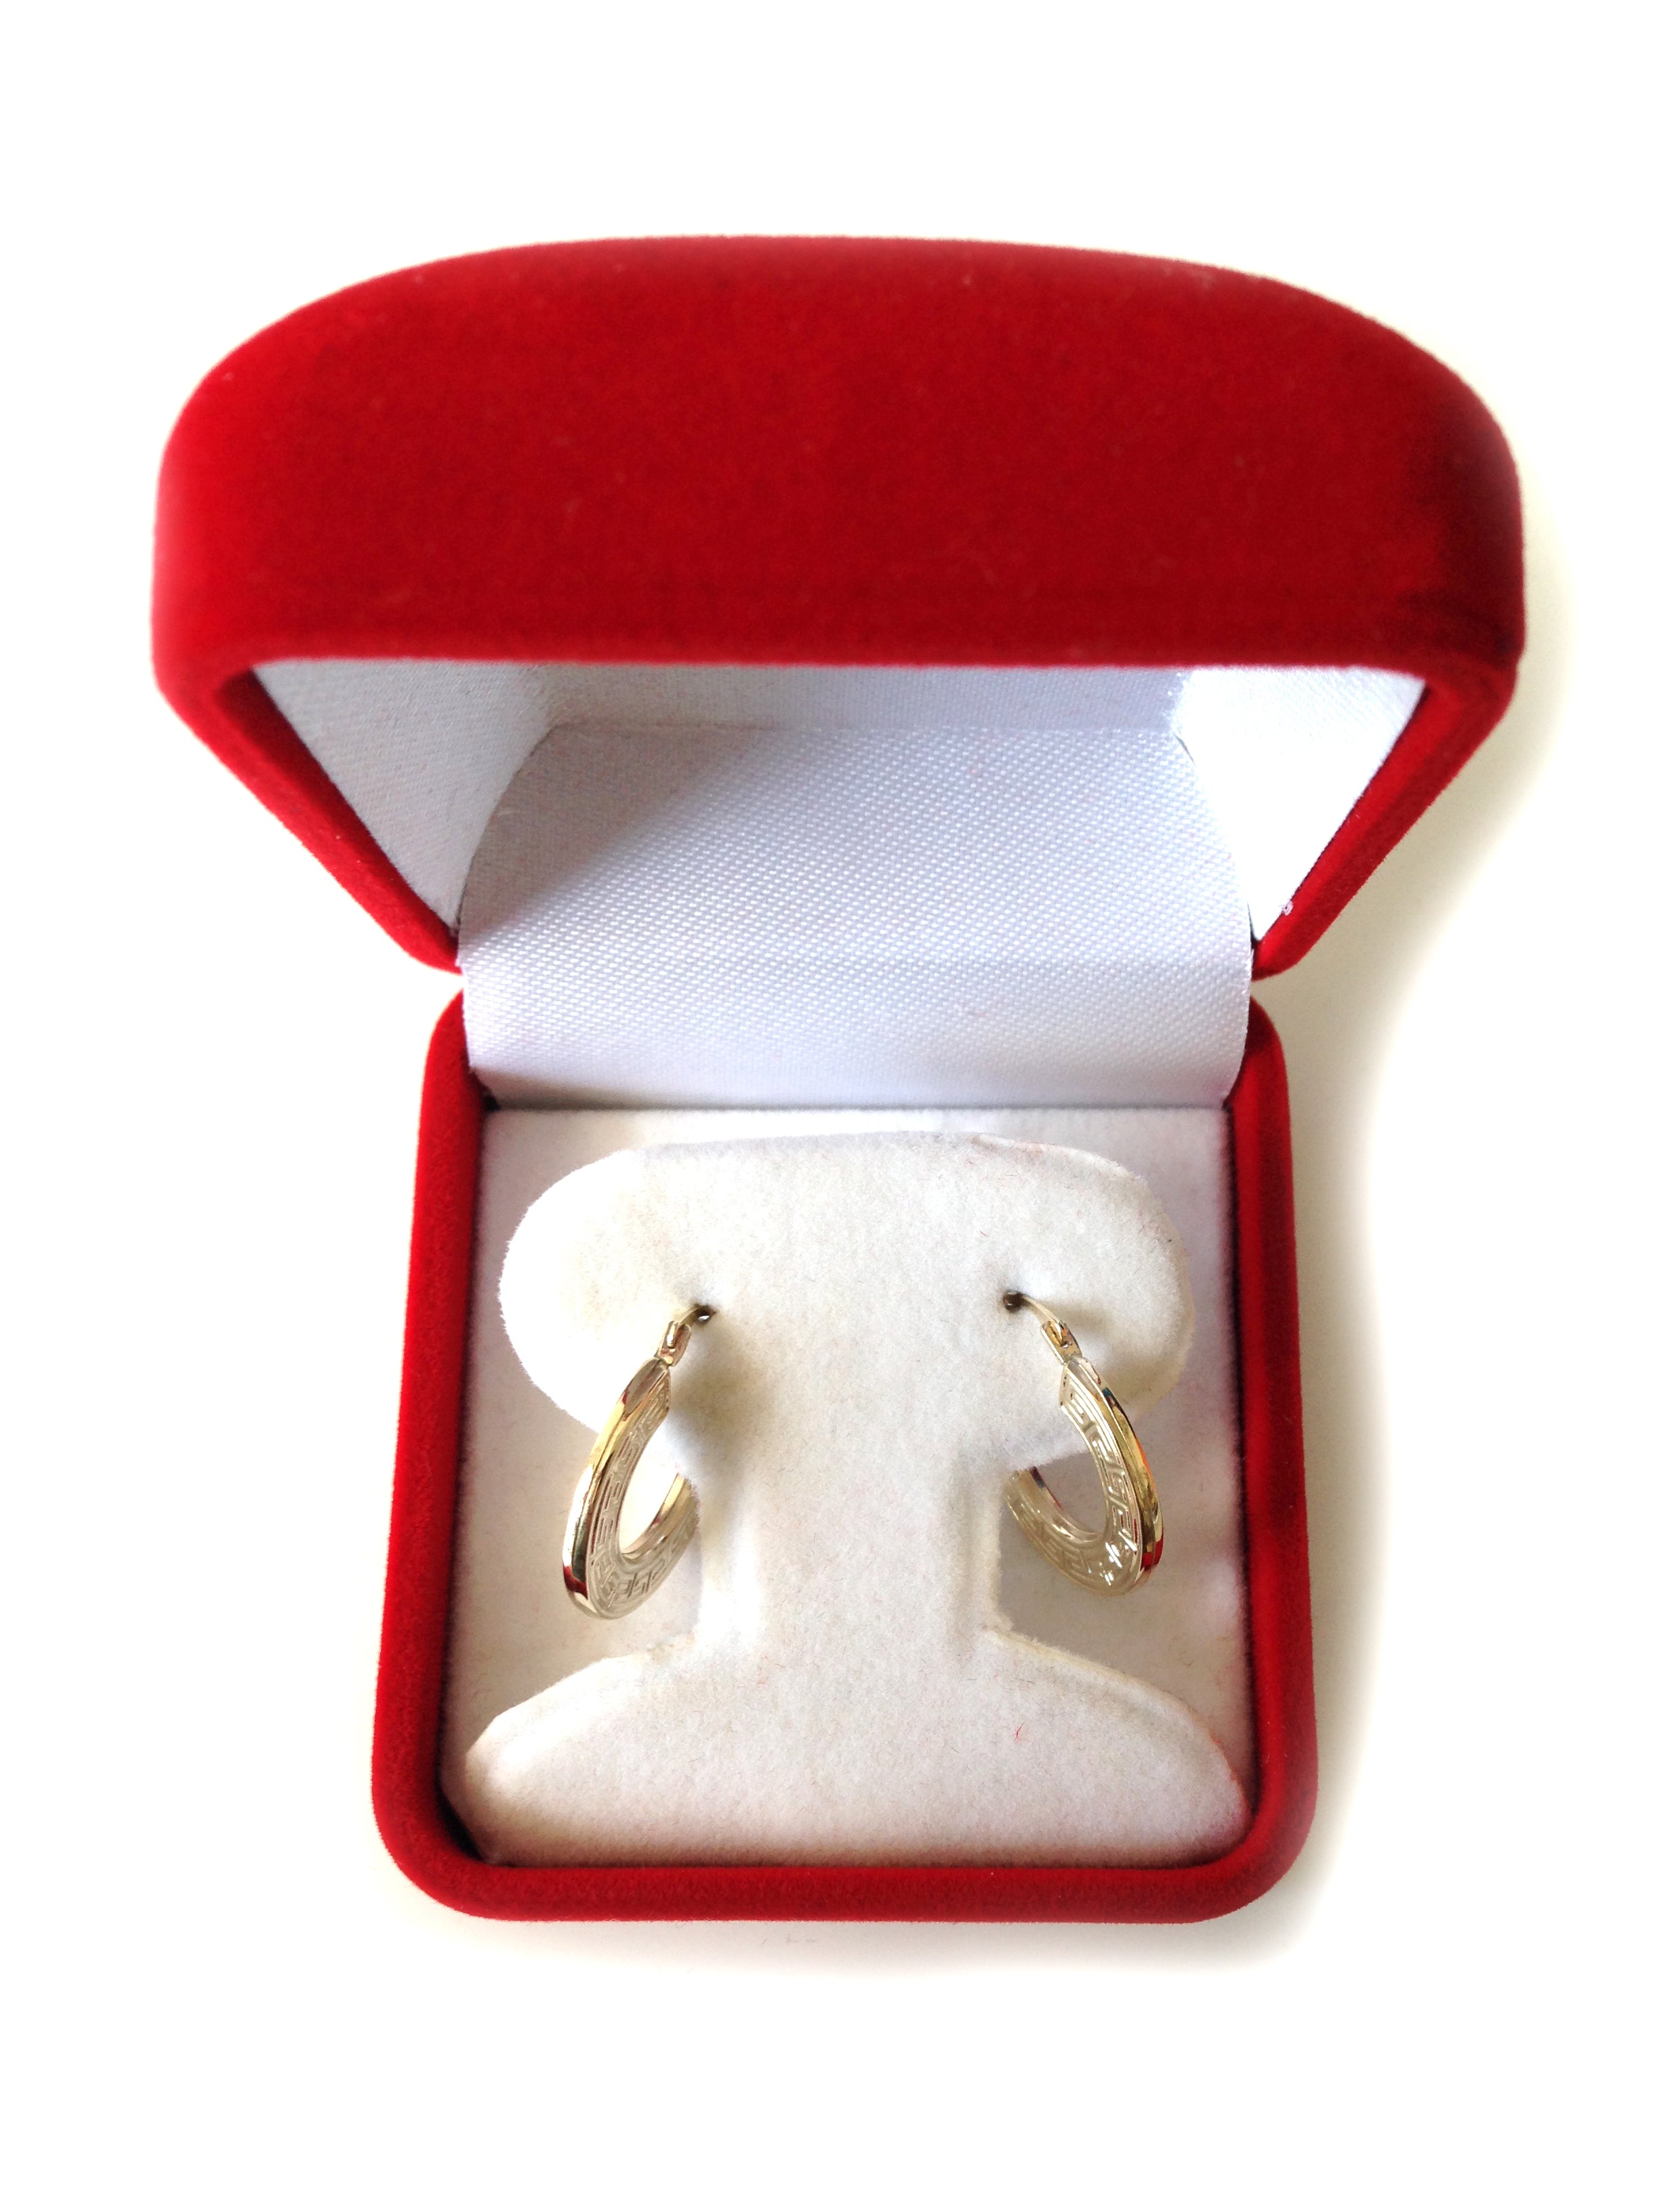 14K gult guld runda grekiska nyckelbågeörhängen, diameter 15 mm fina designersmycken för män och kvinnor